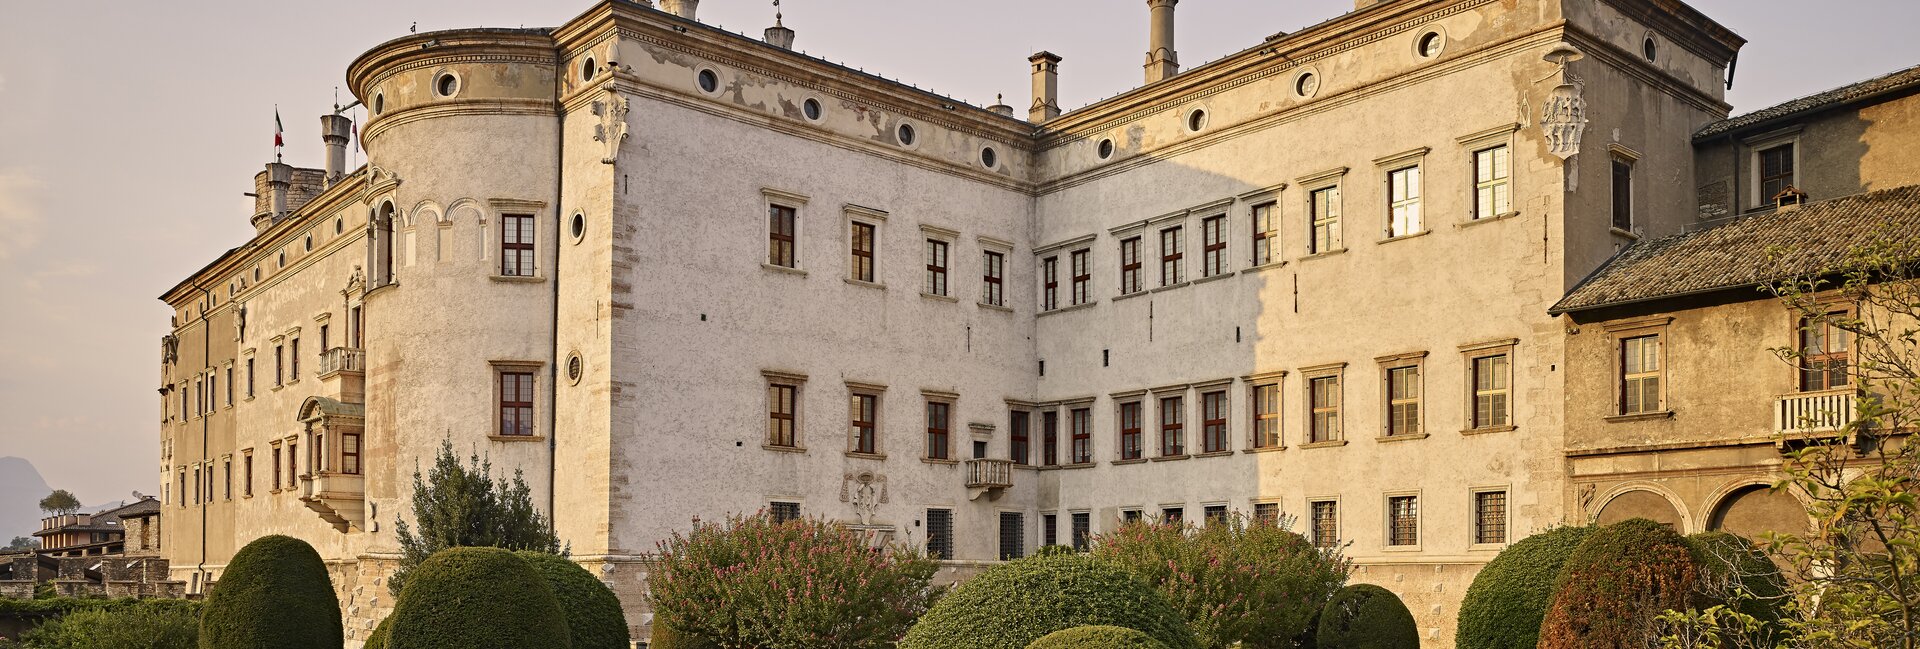 Burg bei Trento - Castello del Buonconsiglio